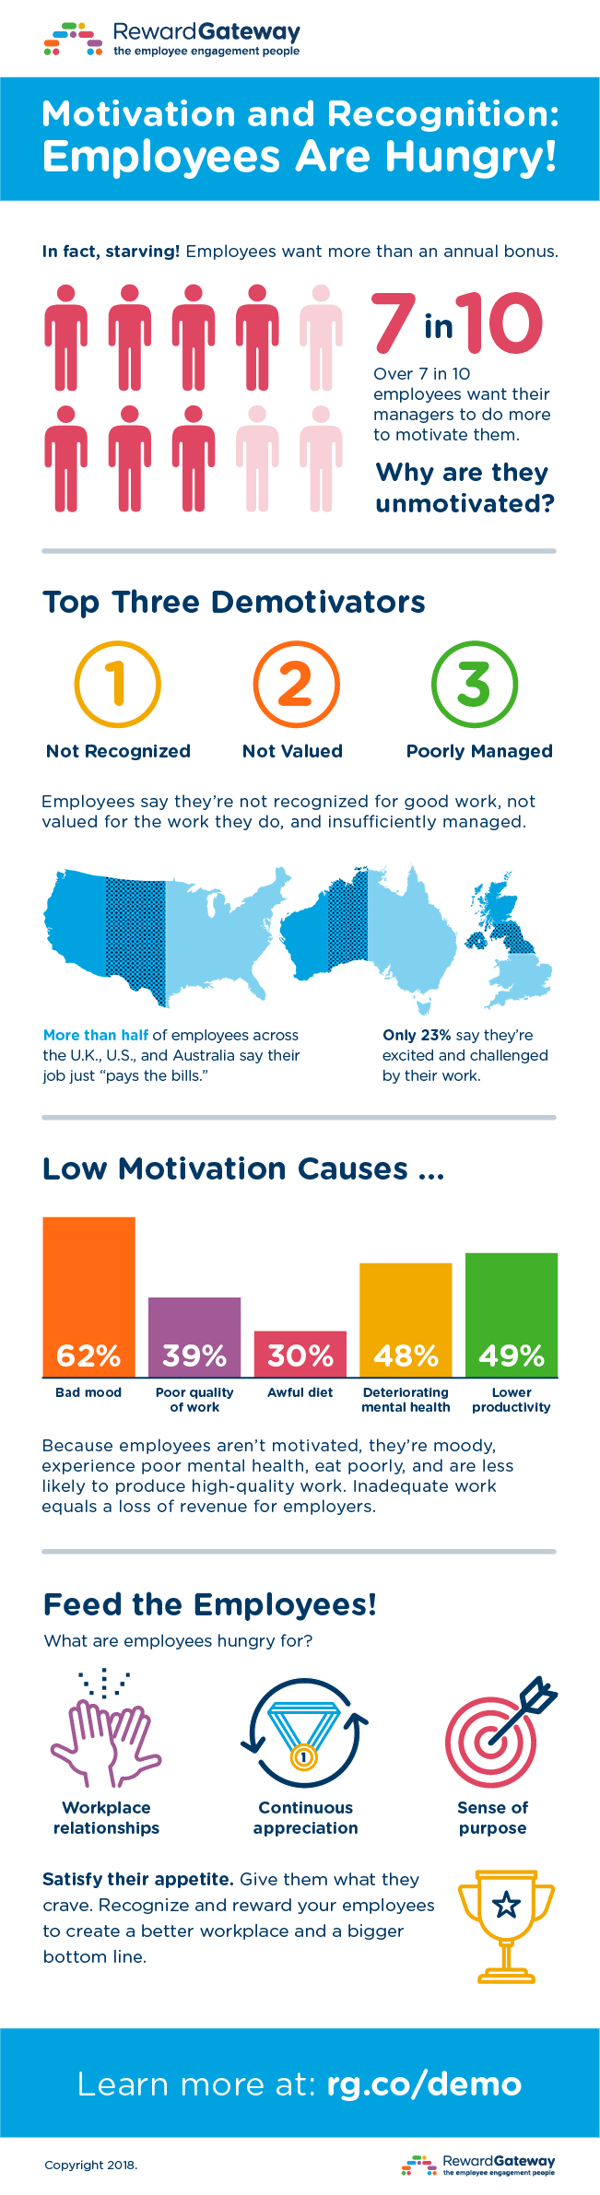 Reward-Gateway-Employee-Motivation-Infographic-2018-AU